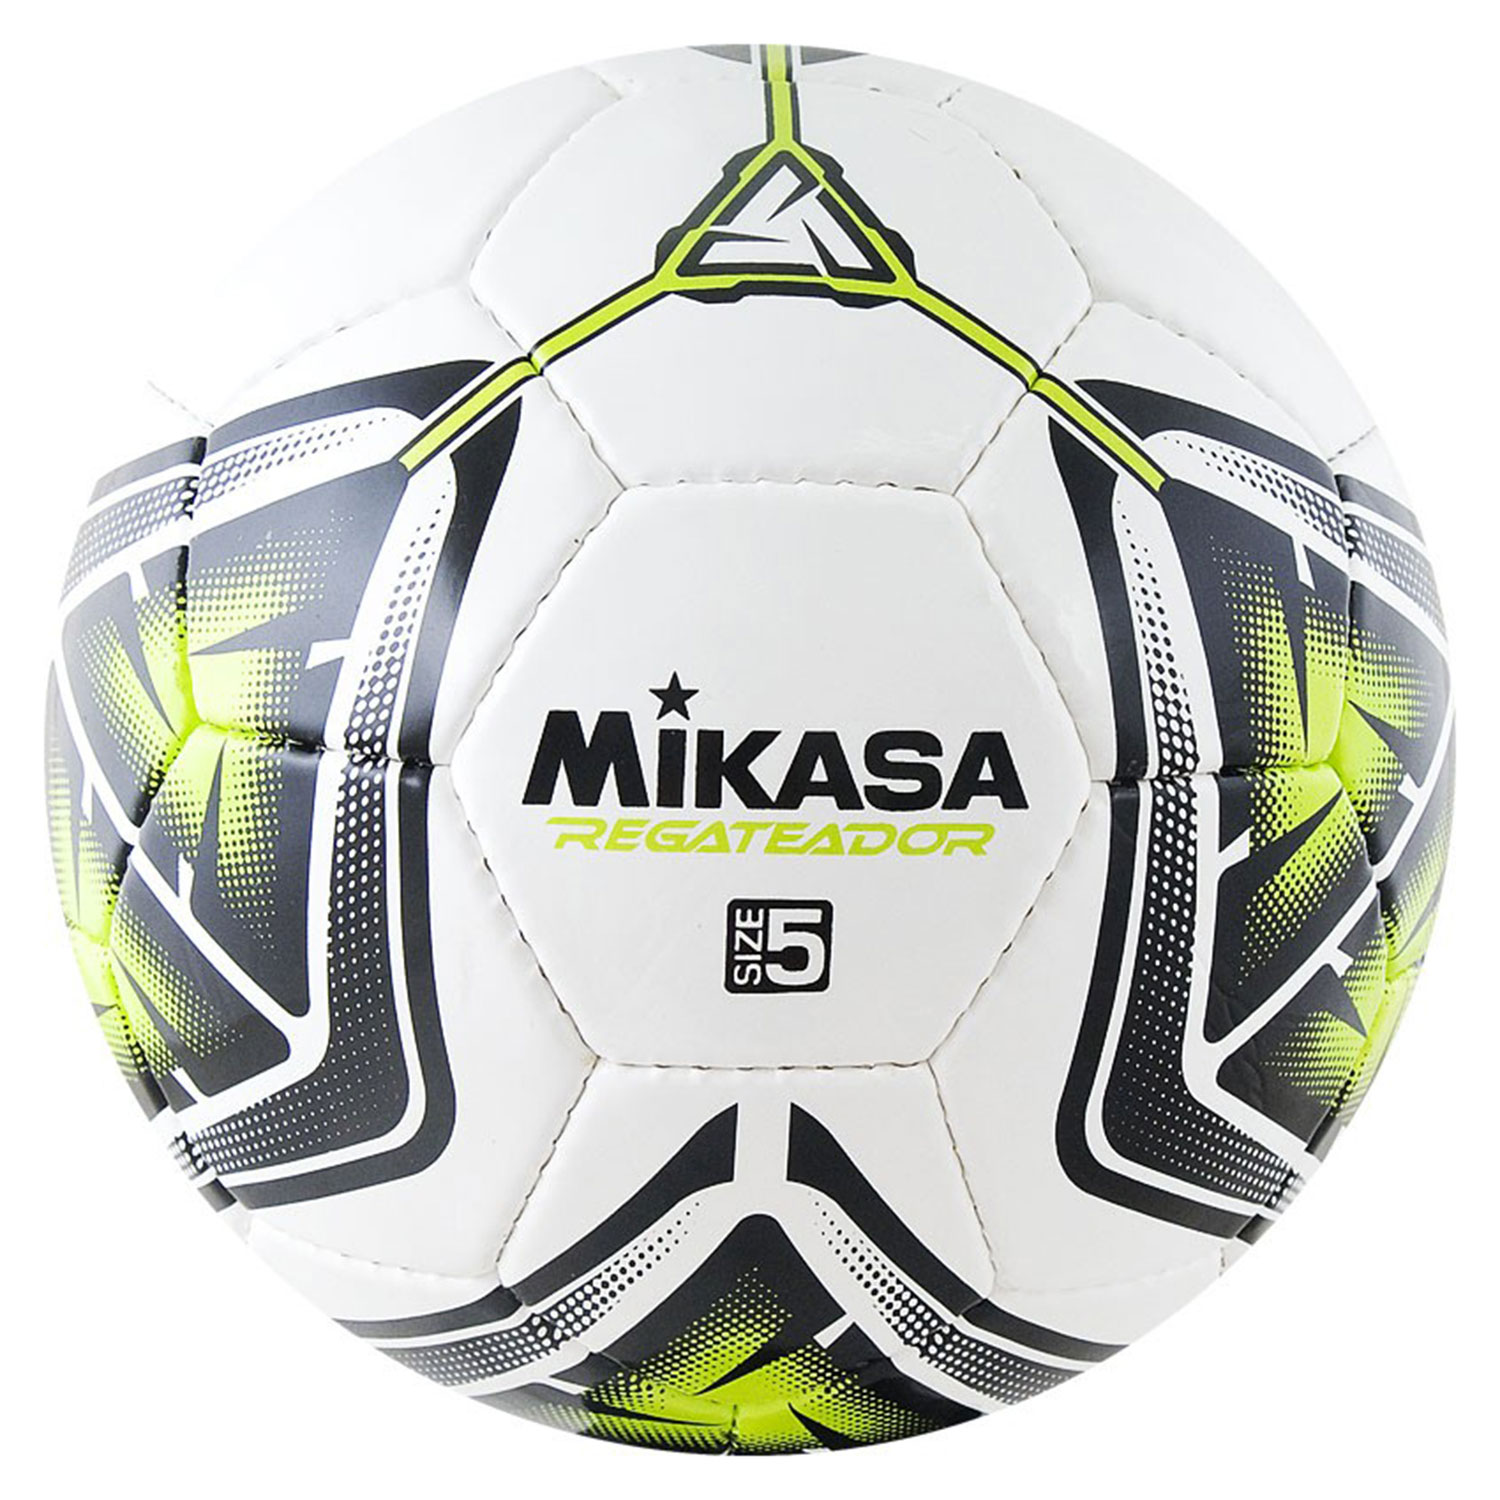 фото Мяч футбольный mikasa regateador5-g р.4